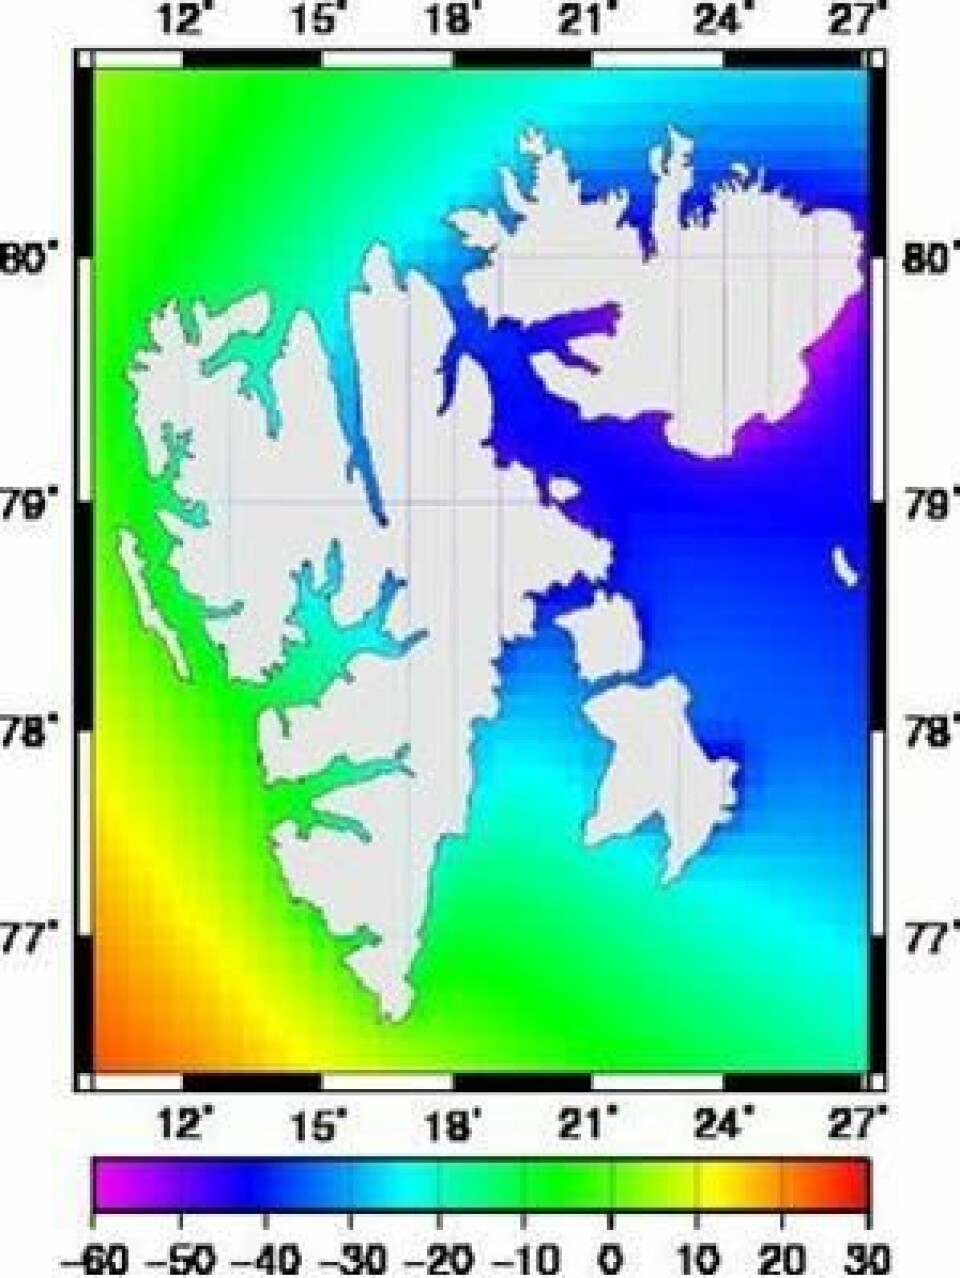 Figuren viser havnivået rundt Svalbard om hundre år. Havnivået er angitt i centimeter i forhold til dagens nivå. Der landet stiger raskest vil havet synke mest. På vestkysten av Svalbard vil hav og land stige omtrent like mye og endringene er derfor små. (Statens kartverk)